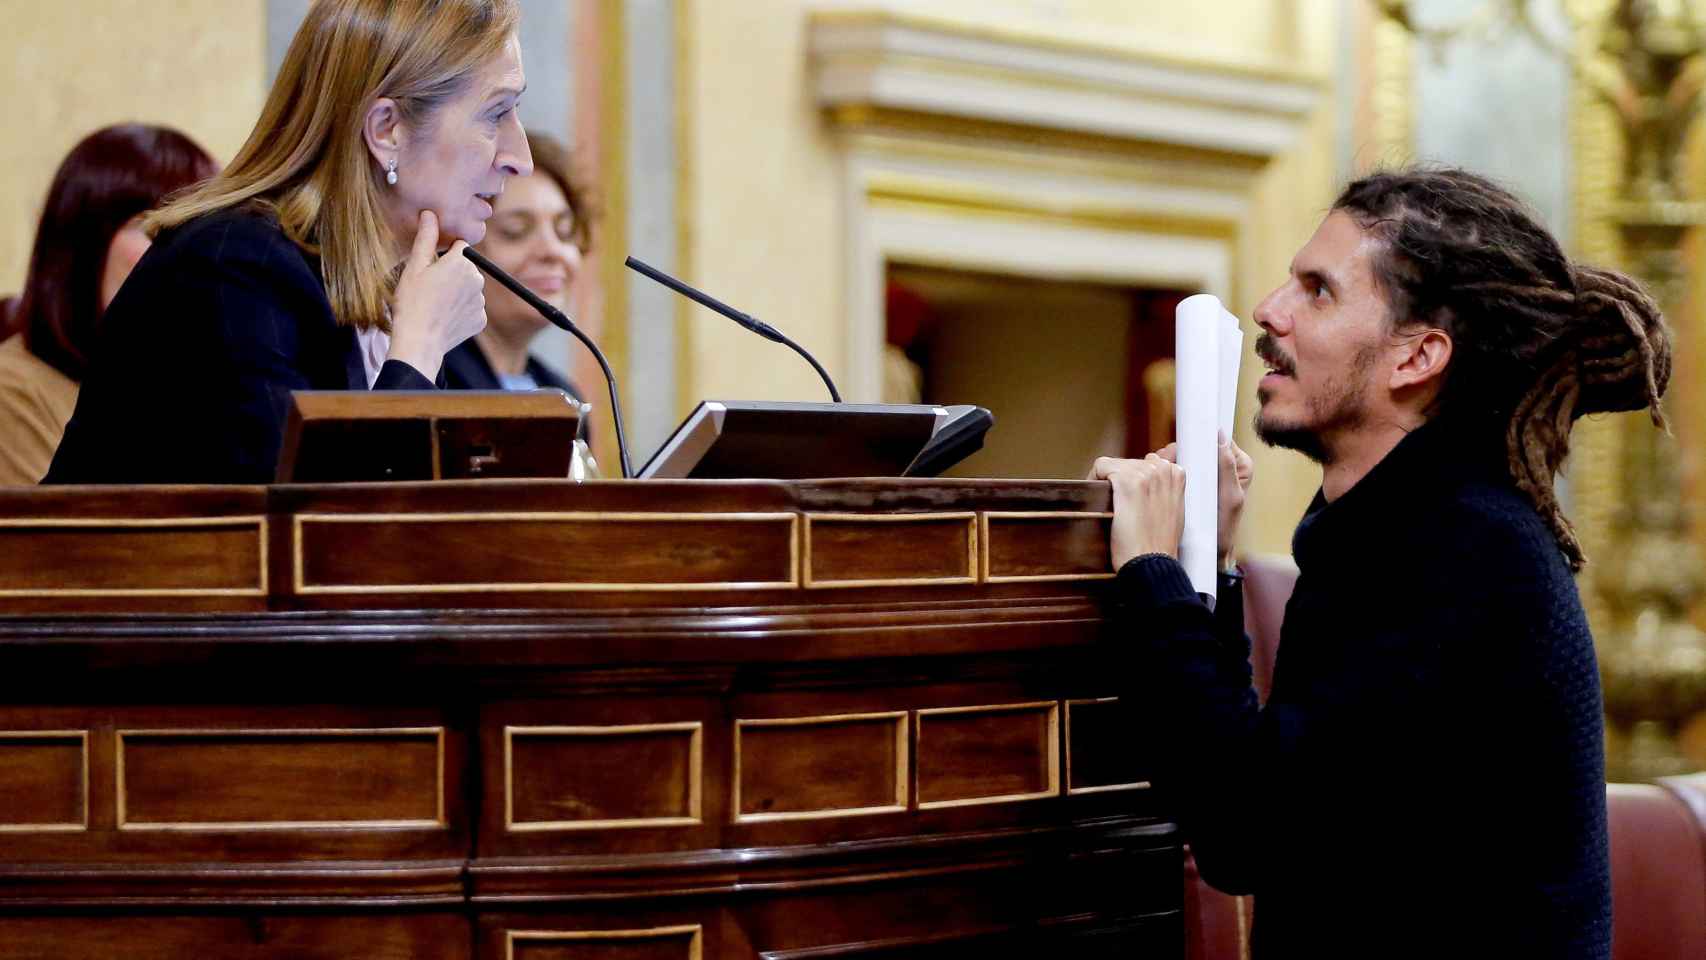 El diputado de Podemos Alberto Rodríguez conversa con la presidenta de la cámara, Ana Pastor, en el Congreso.